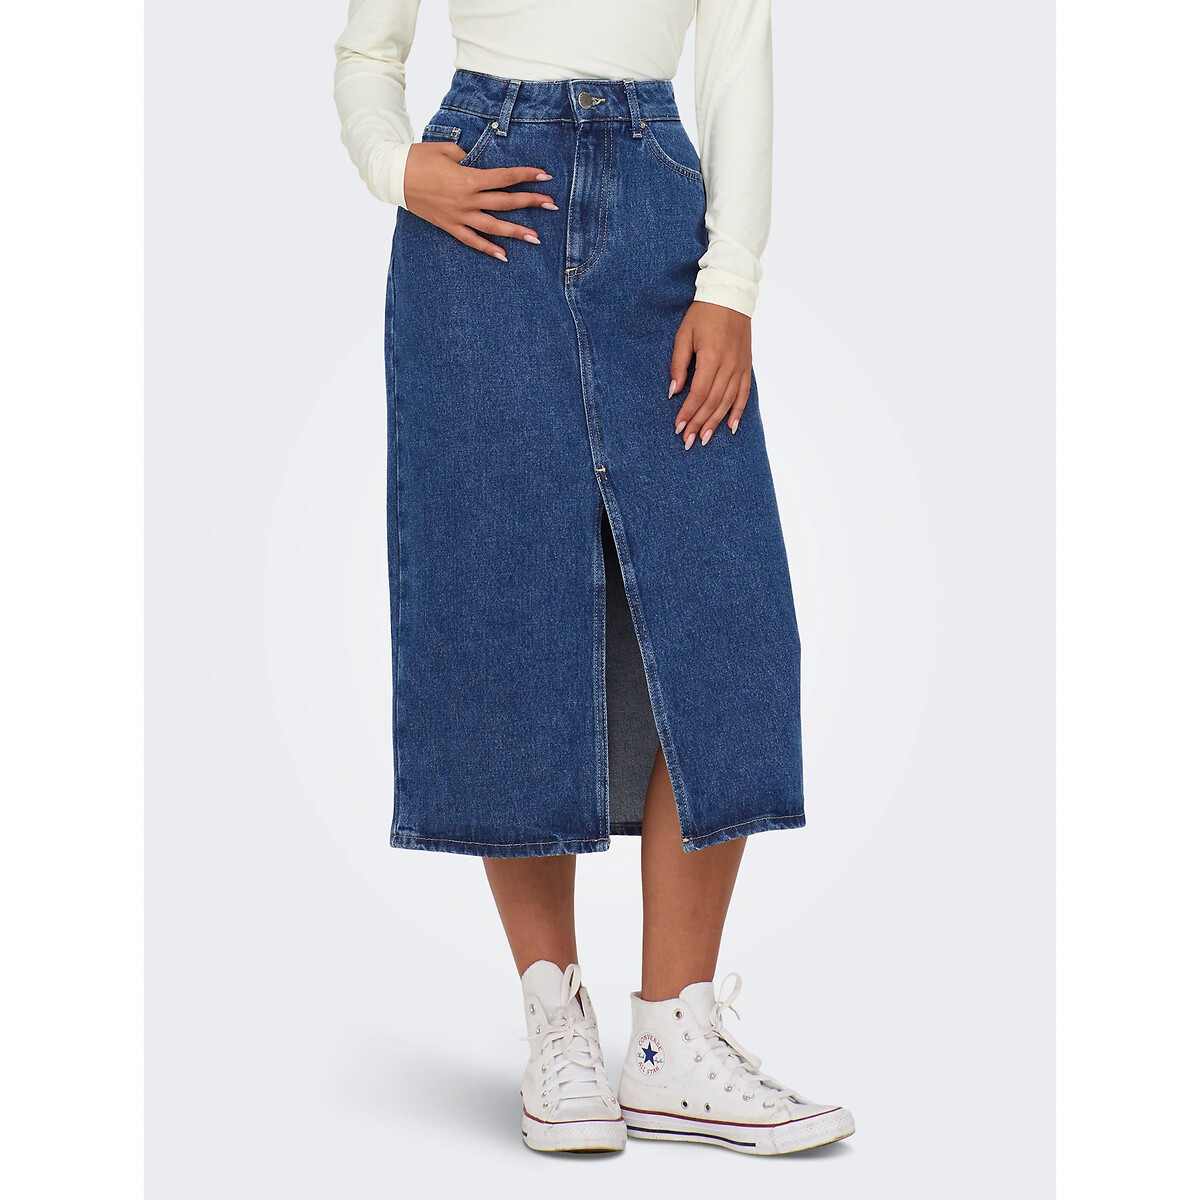 Юбка-миди из джинсовой ткани S синий юбка миди из джинсовой ткани arket белый